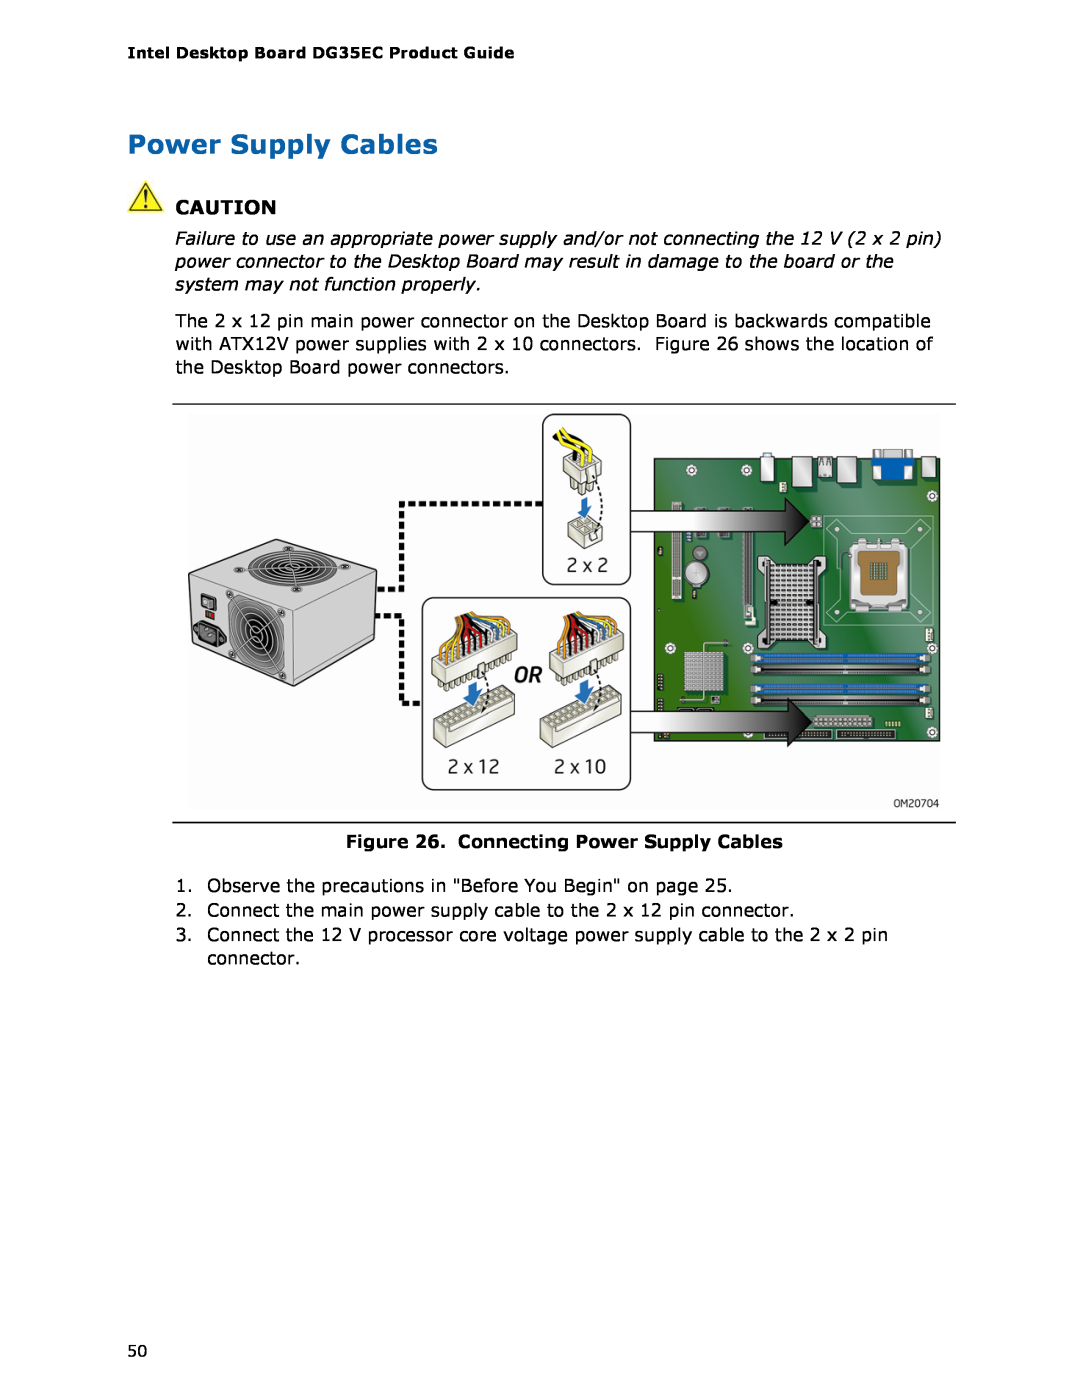 Intel Intel Desktop Board, DG35EC manual Connecting Power Supply Cables 